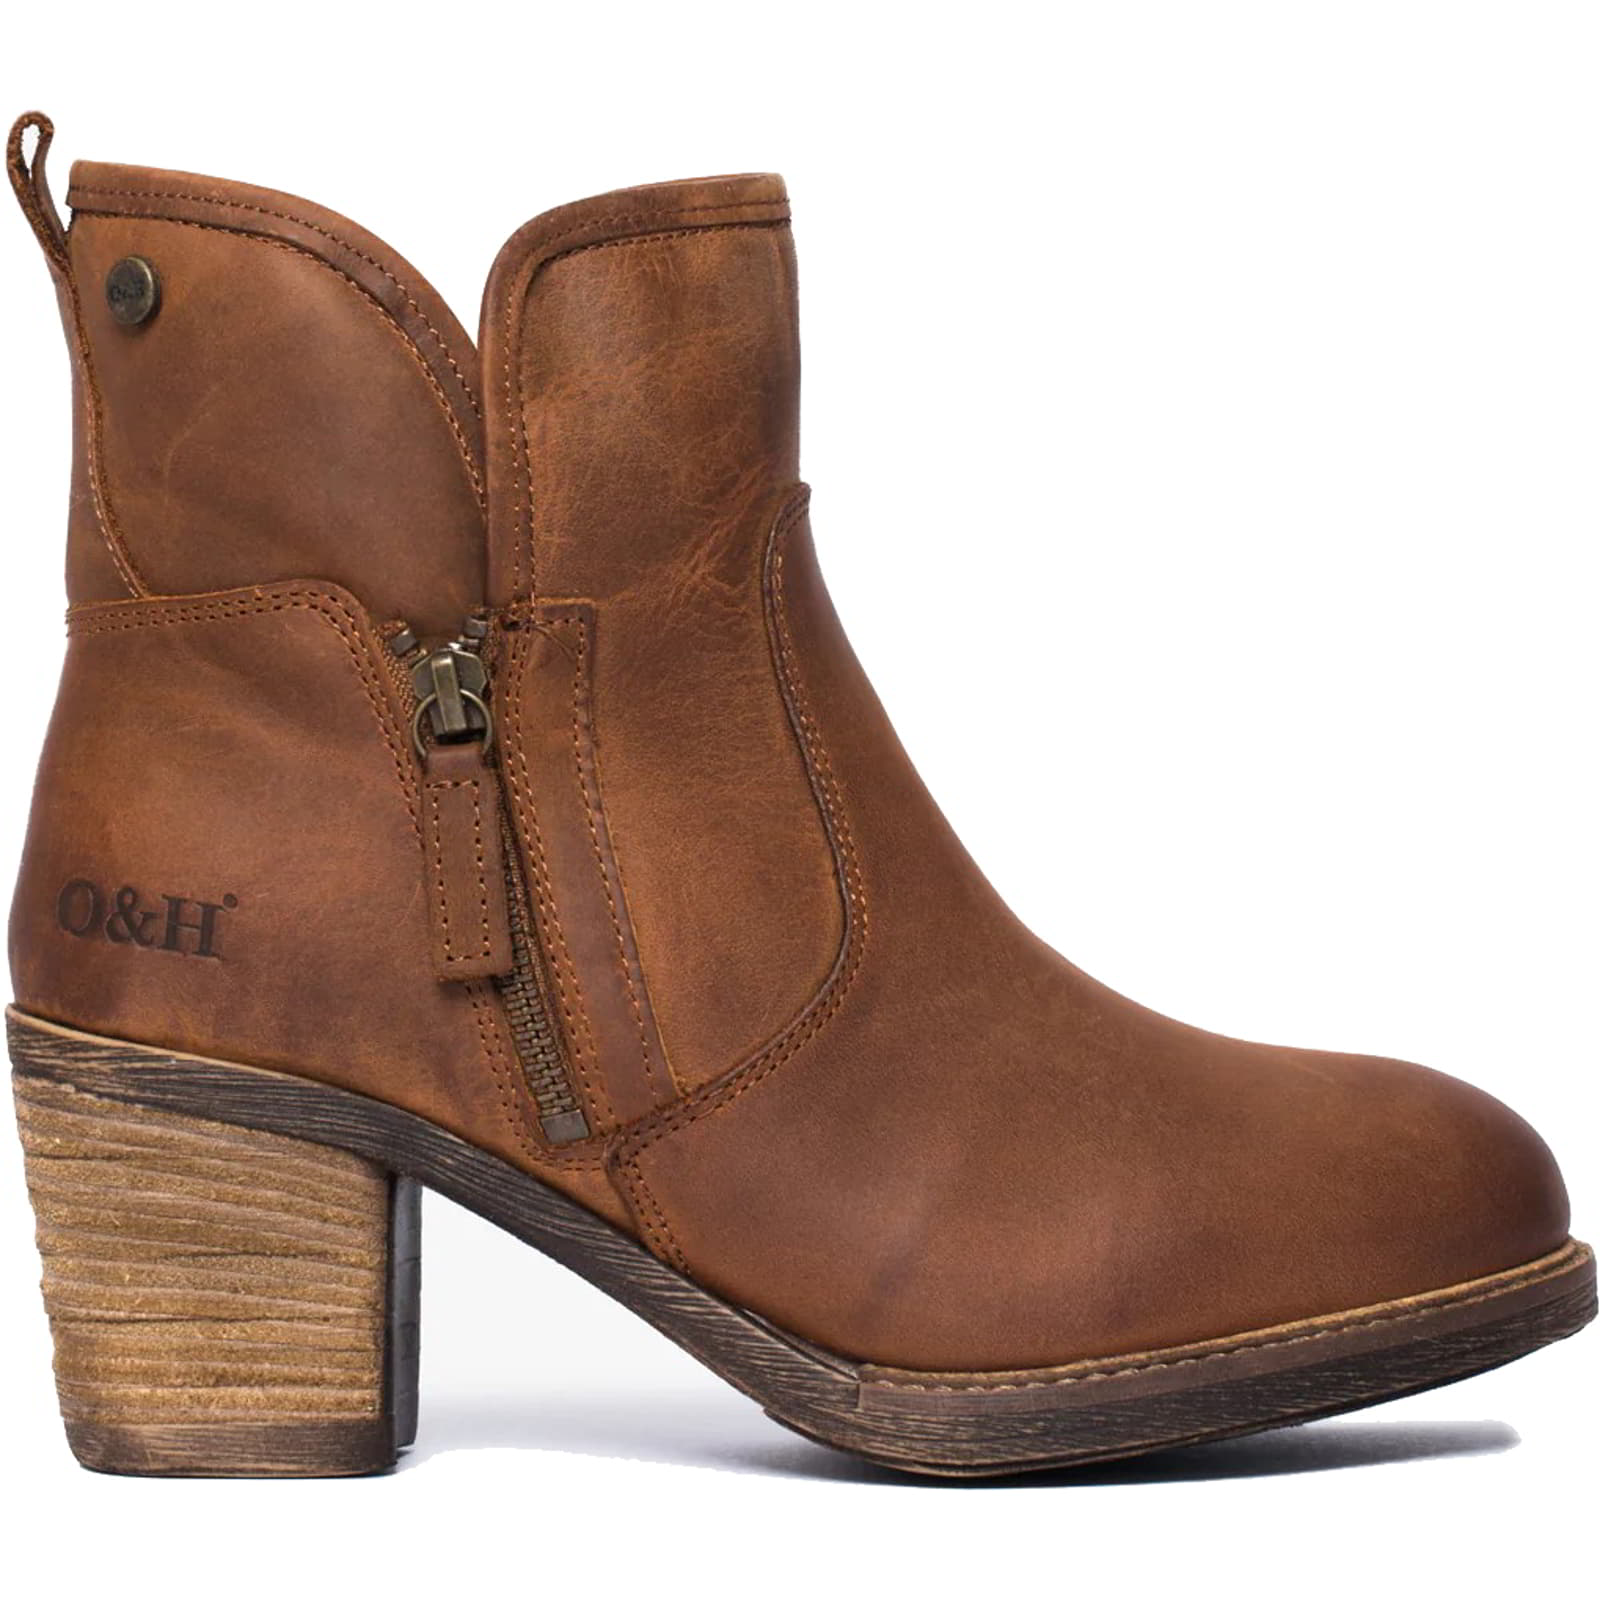 Womens Eastside Western Ankle Boots - Cognac